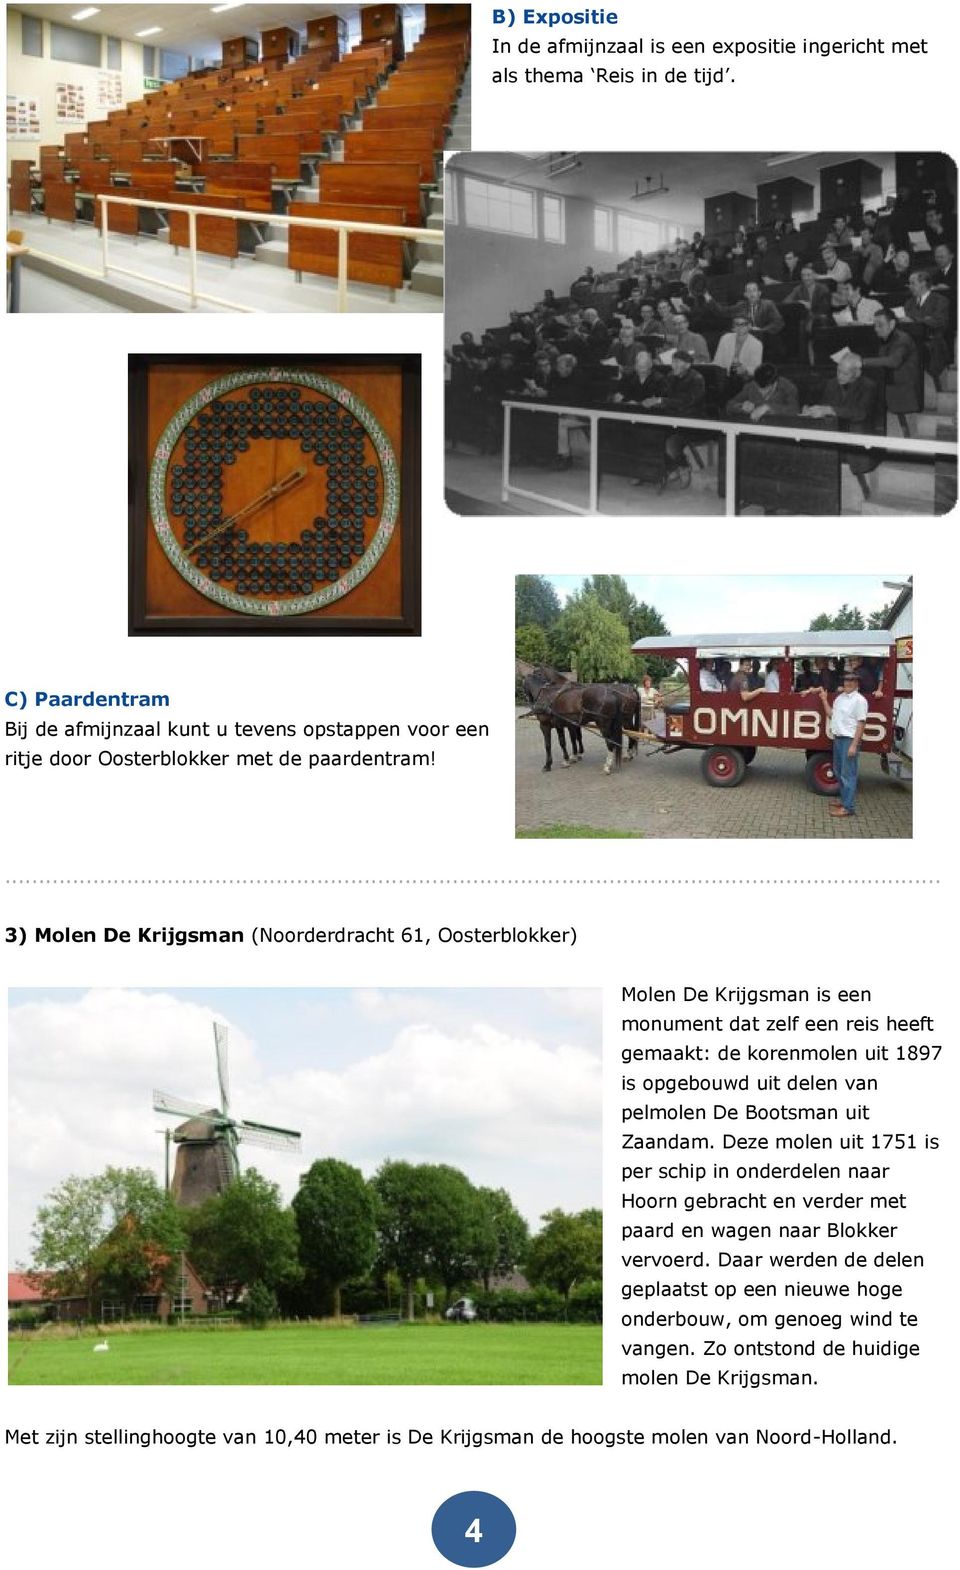 3) Molen De Krijgsman (Noorderdracht 61, Oosterblokker) Molen De Krijgsman is een monument dat zelf een reis heeft gemaakt: de korenmolen uit 1897 is opgebouwd uit delen van pelmolen De